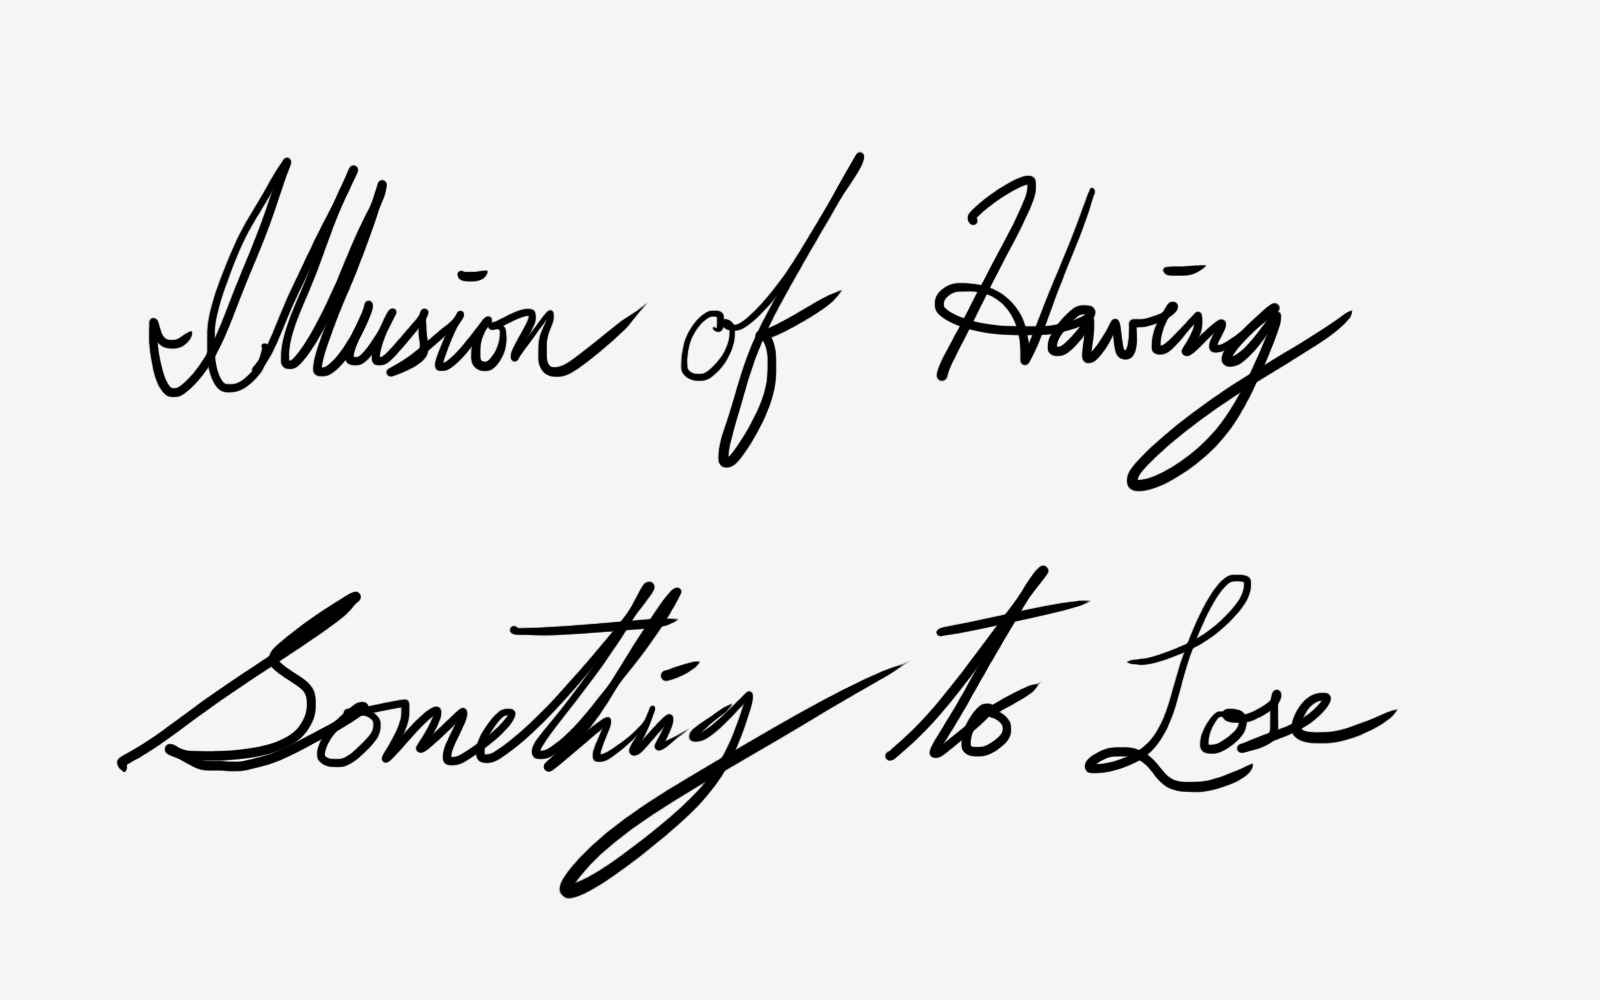 Illusion of having something to lose